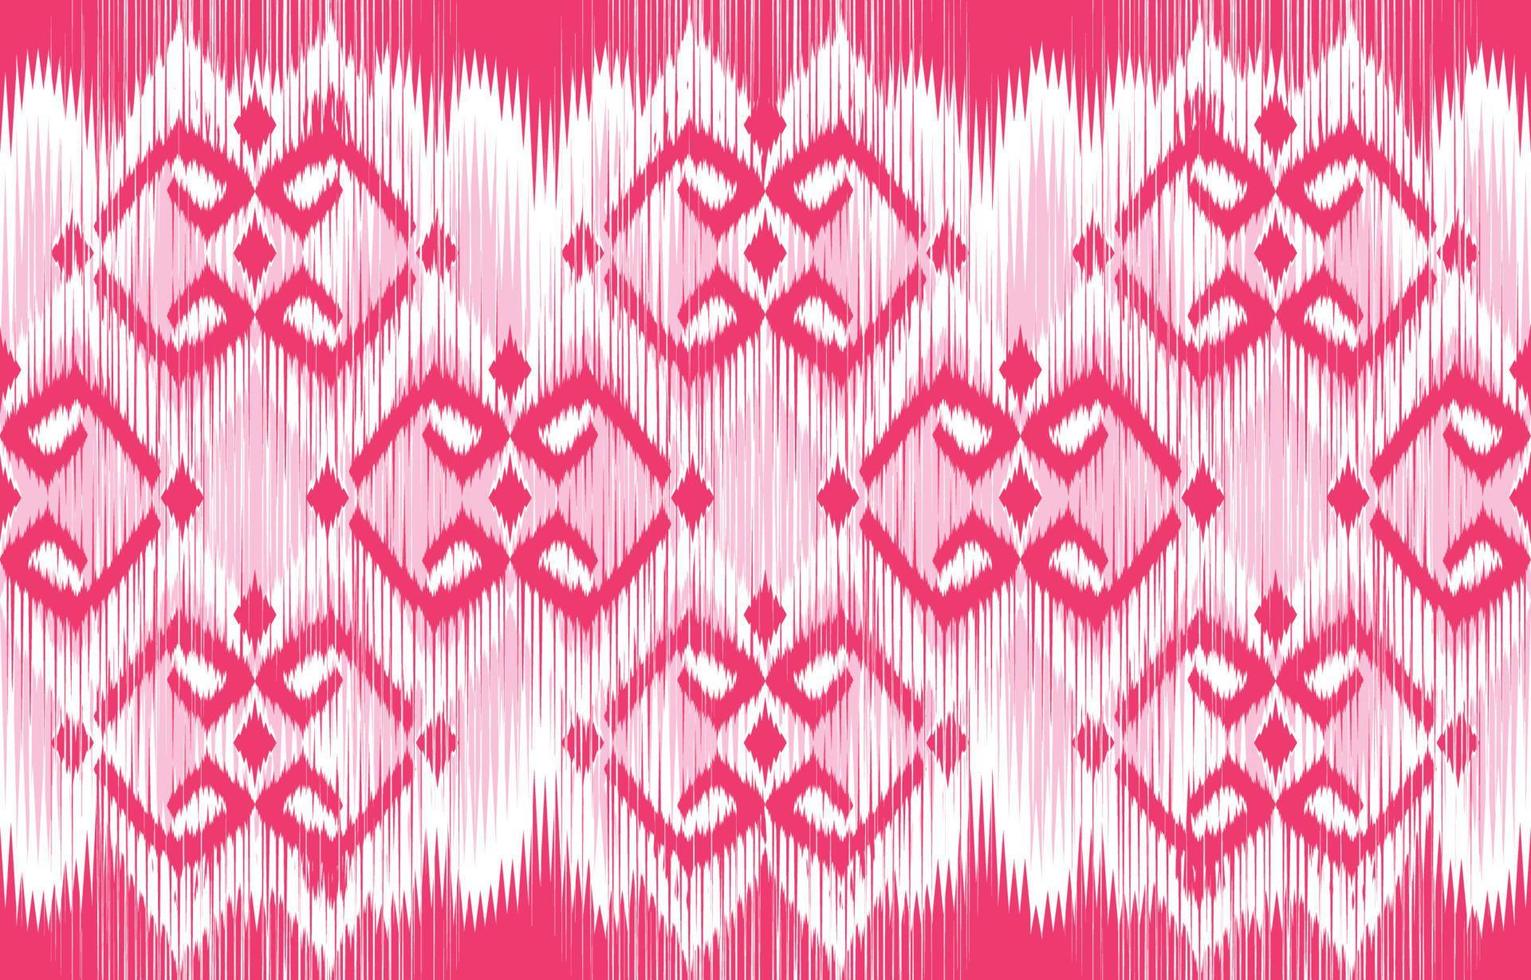 etnische abstracte mooie kunst. ikat naadloos patroon in tribal, folk borduurwerk, mexicaanse stijl. Azteekse geometrische kunst ornament print. ontwerp voor tapijt, behang, kleding, verpakking, stof. vector